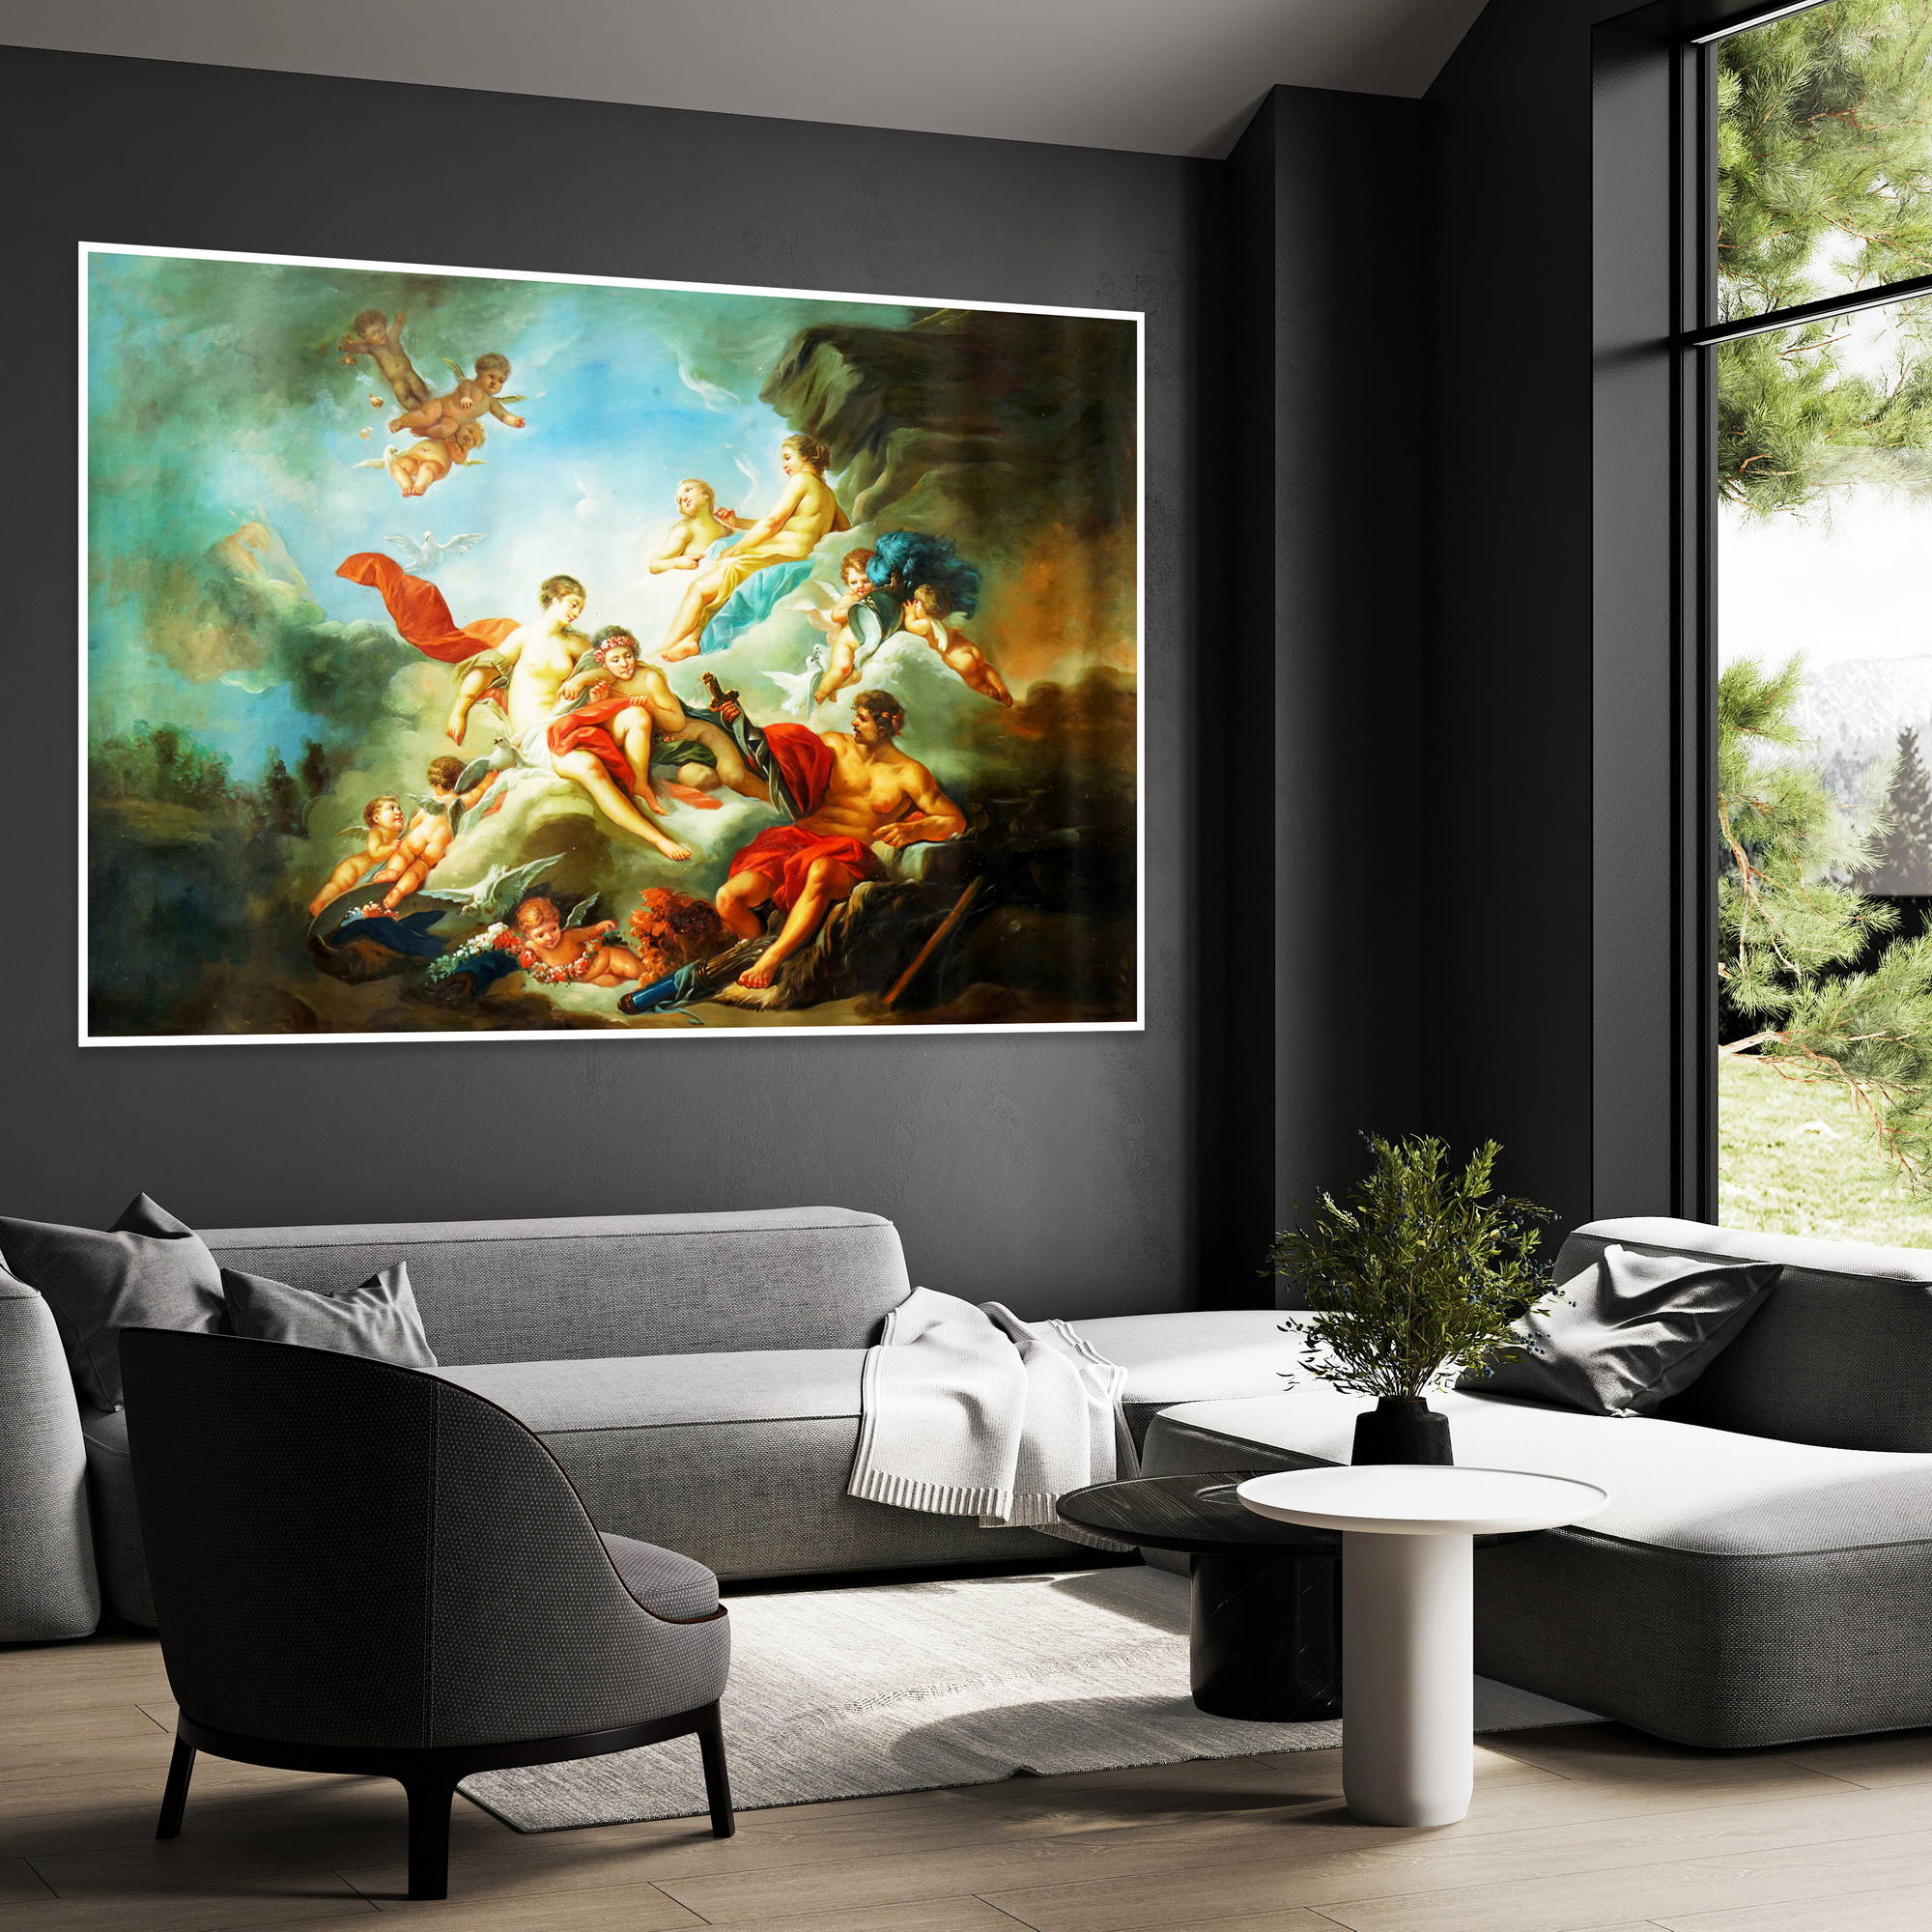 Dipinto di una scena mitologica con angeli e divinità in volo